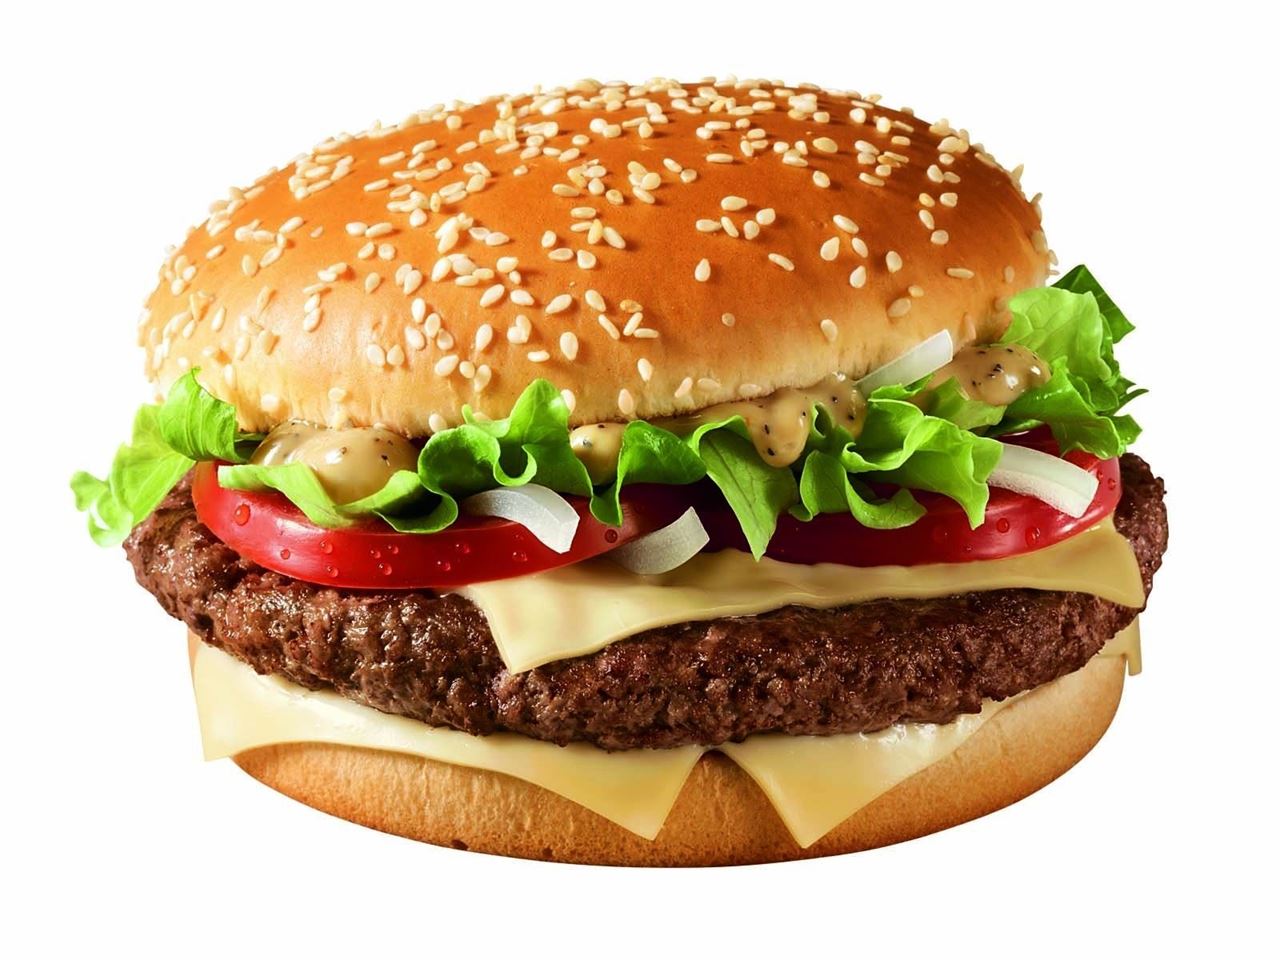 McDonald's Big Tasty Burger